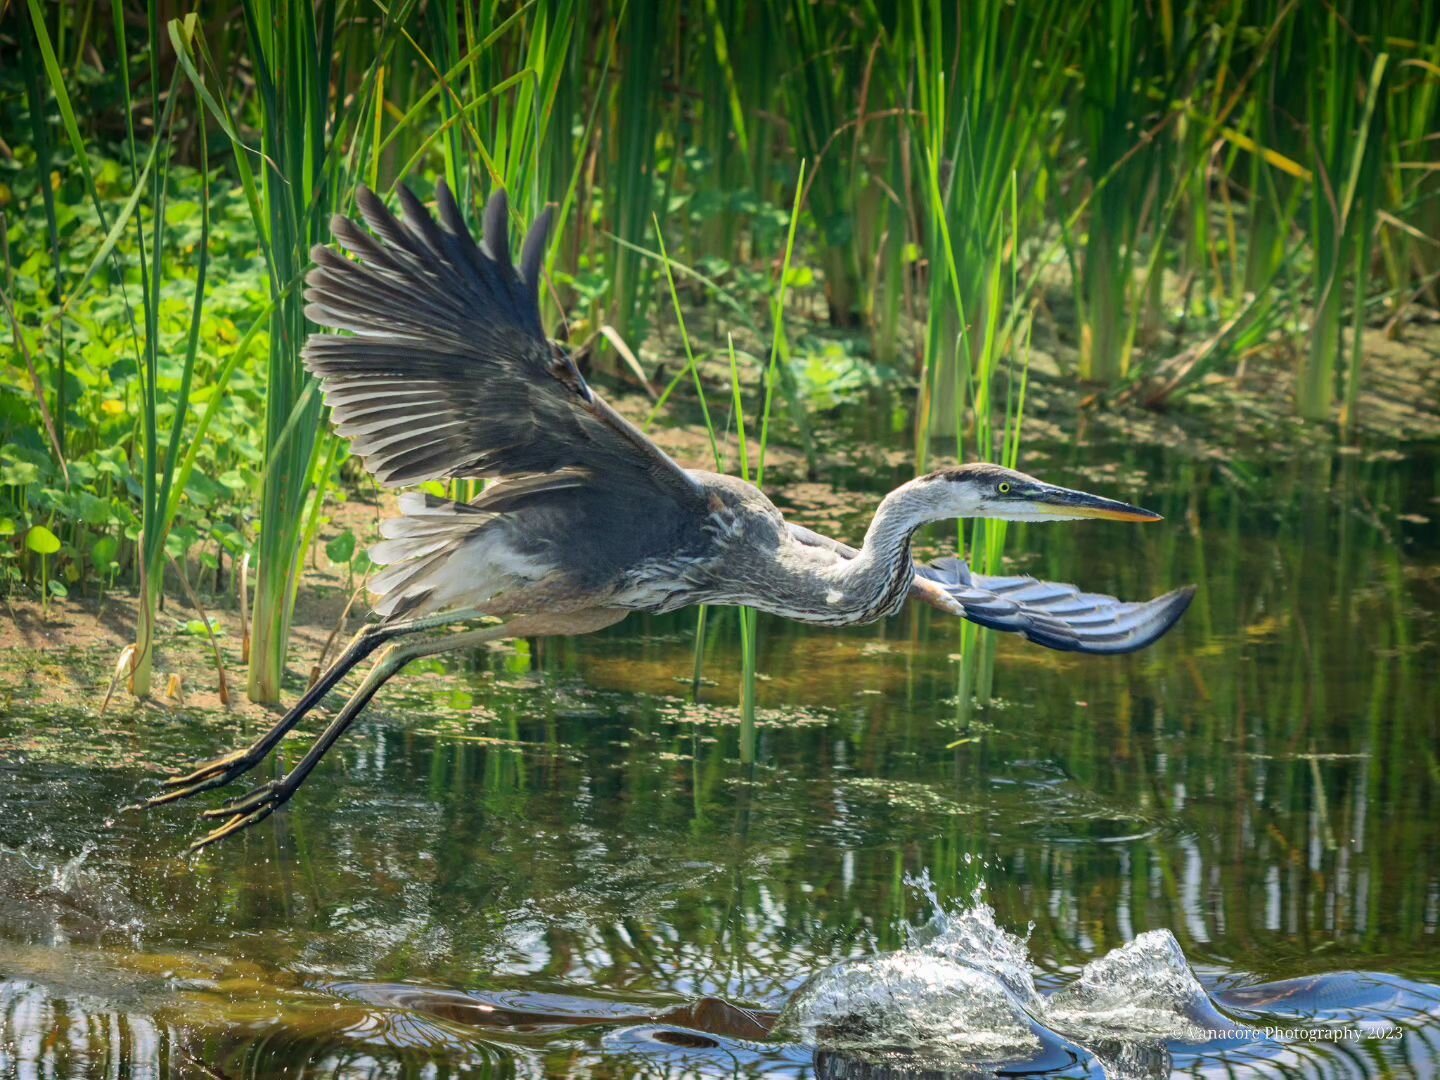 A young Gret Blue Heron taking off at Orlando Wetlands Park. #florida #orlandowetlands #orlandowetlandspark #christmasflorida #bird #greatblueheron #wadingbirds #birdphotography #wildlifephotography #naturephotography #godcreation #glorytogod